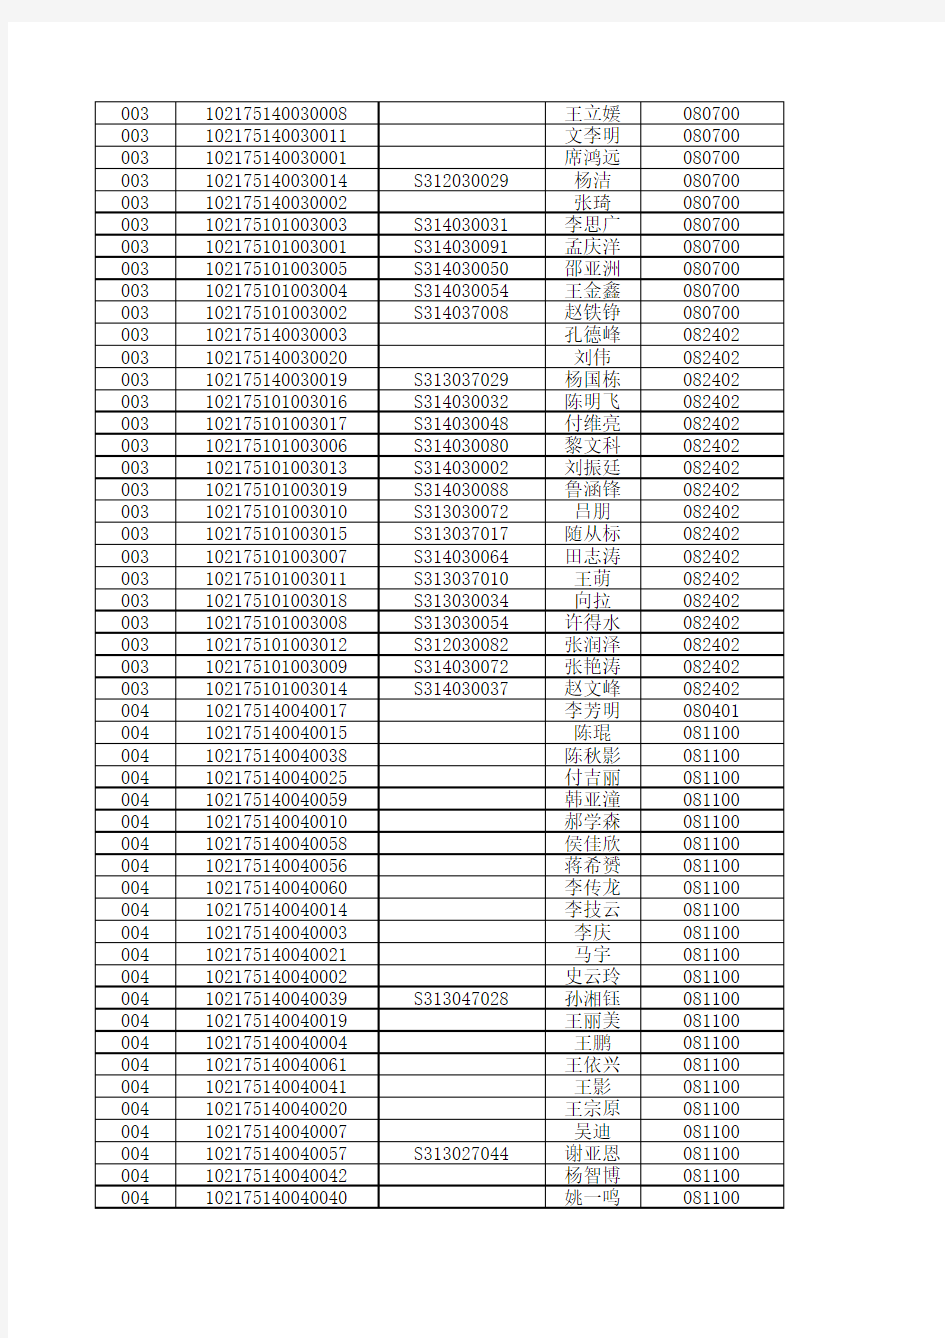 哈尔滨工程大学2015博士生拟录取名单公示